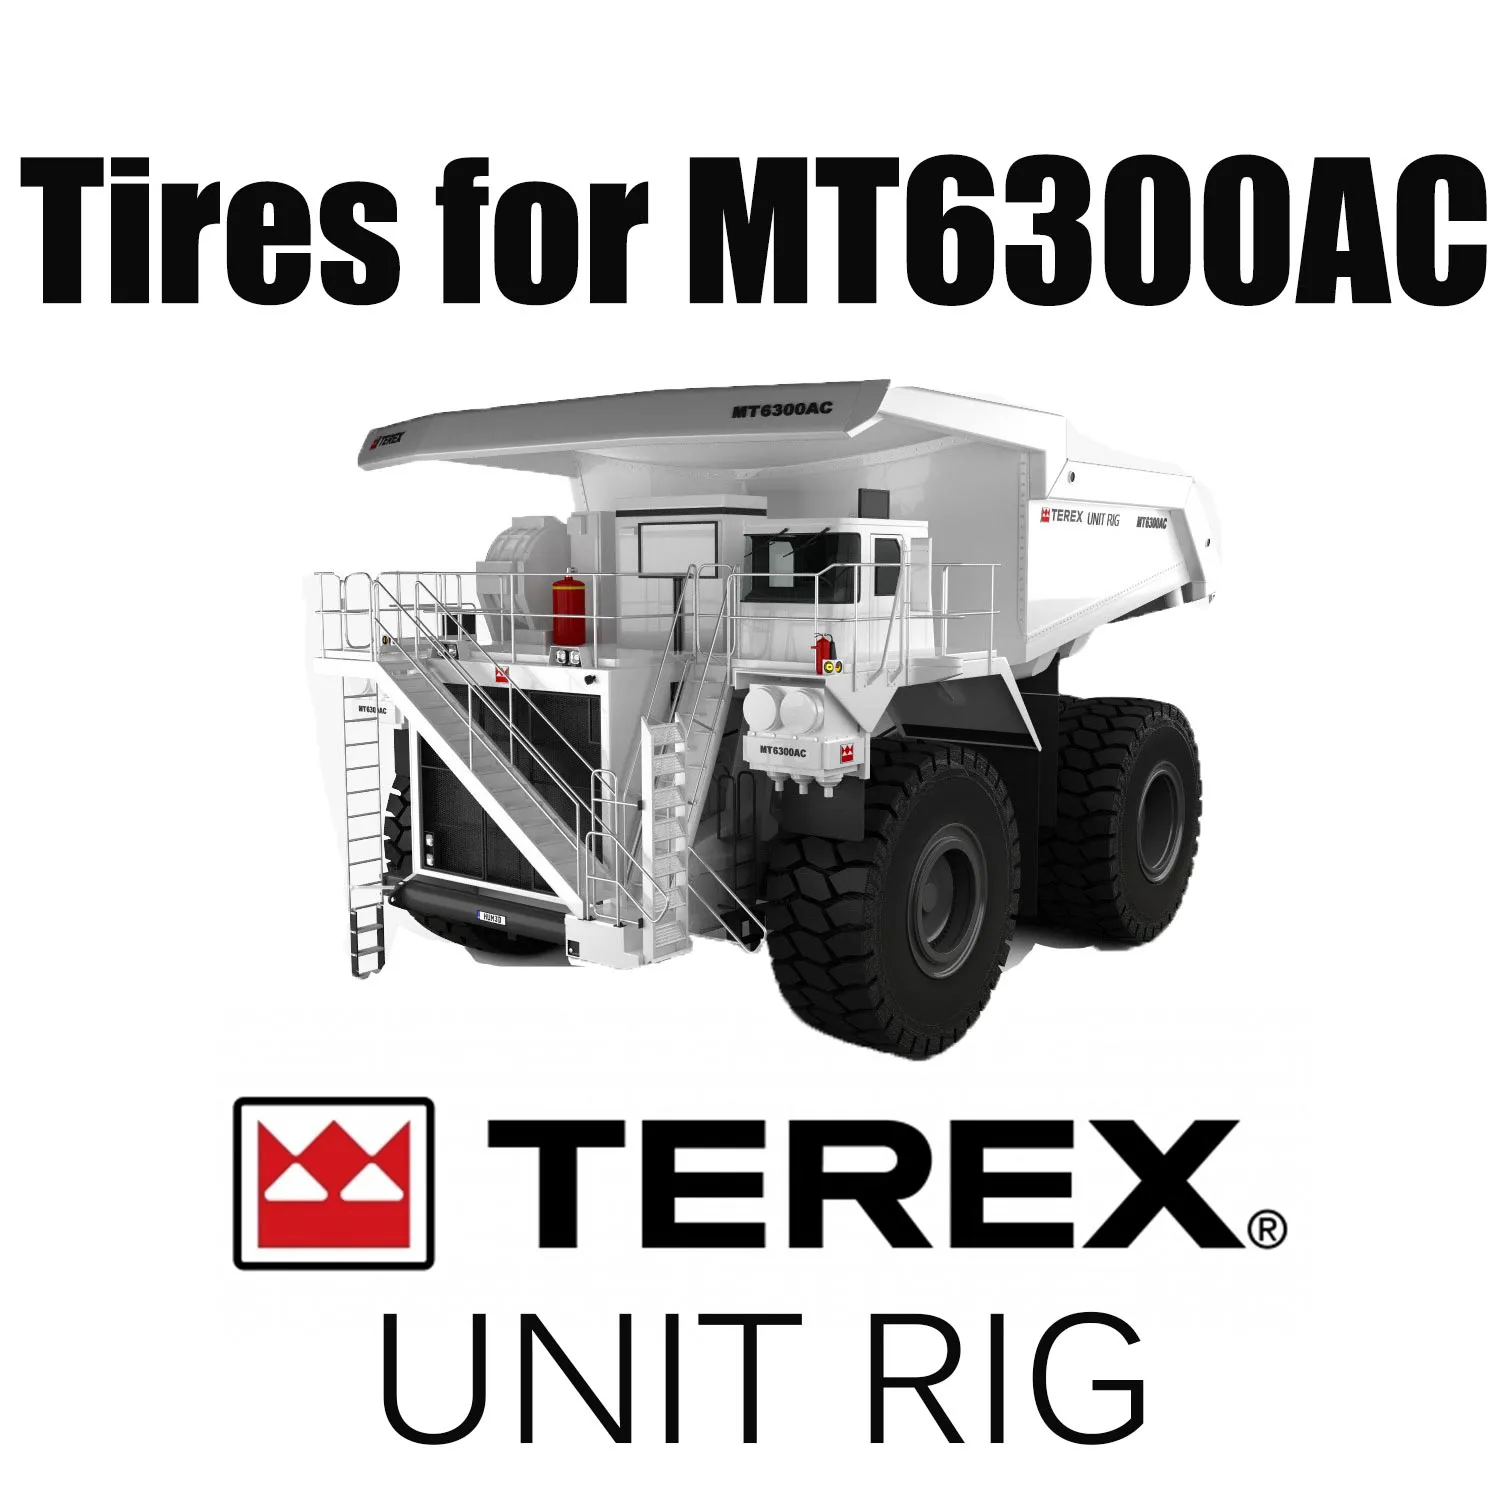 Xe tải tự đổ UNIT RIG MT6300AC được trang bị lốp địa hình Giant 59 / 80R63